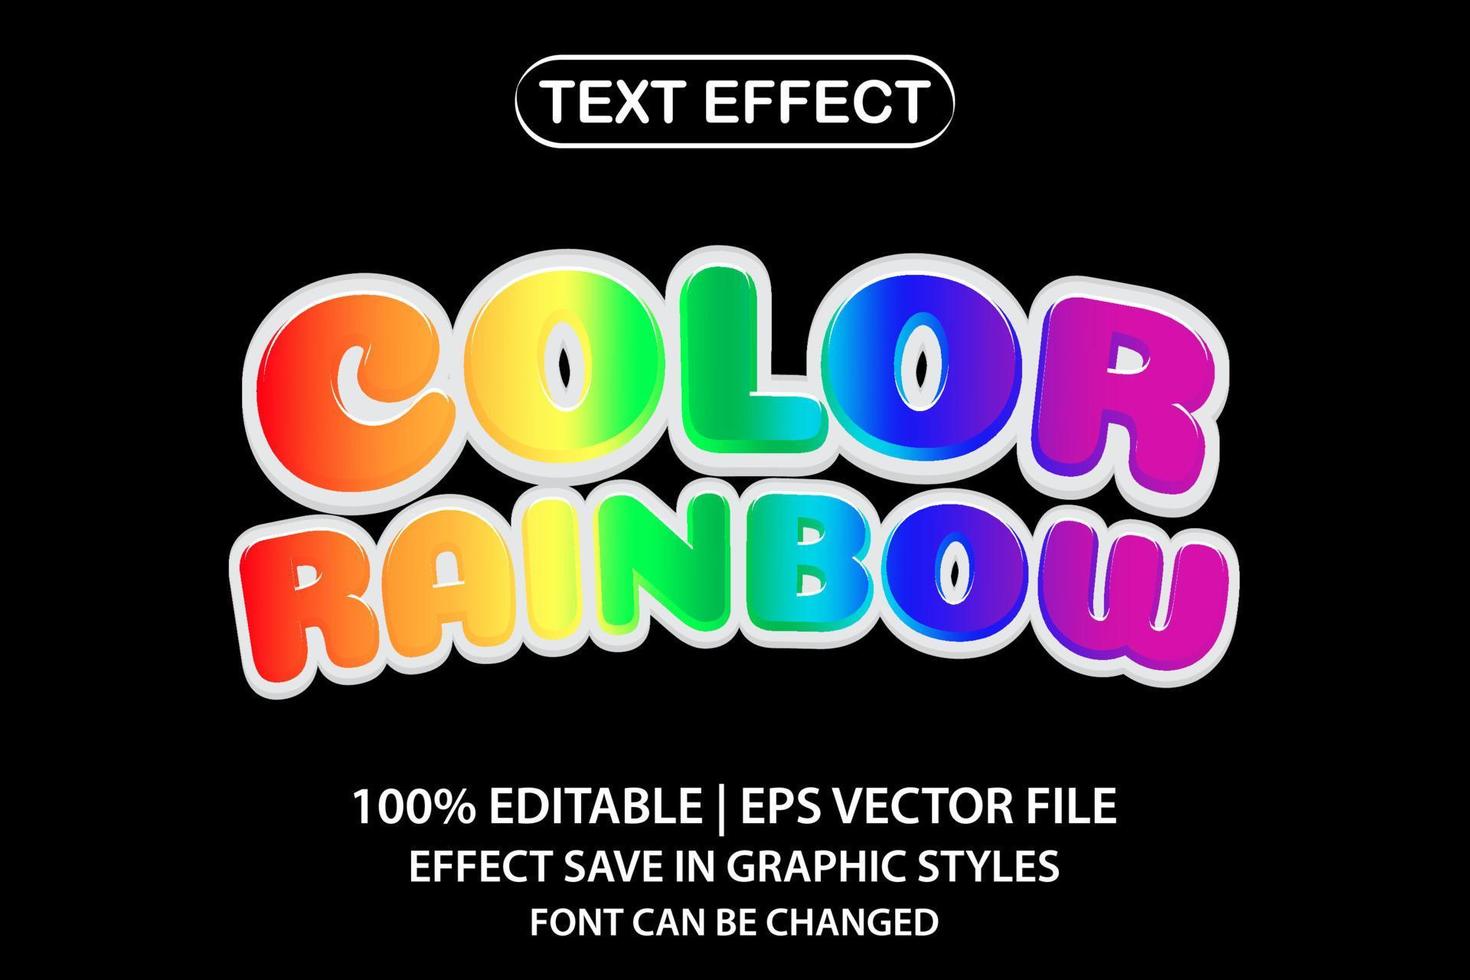 efeito de texto editável em 3D de arco-íris colorido vetor